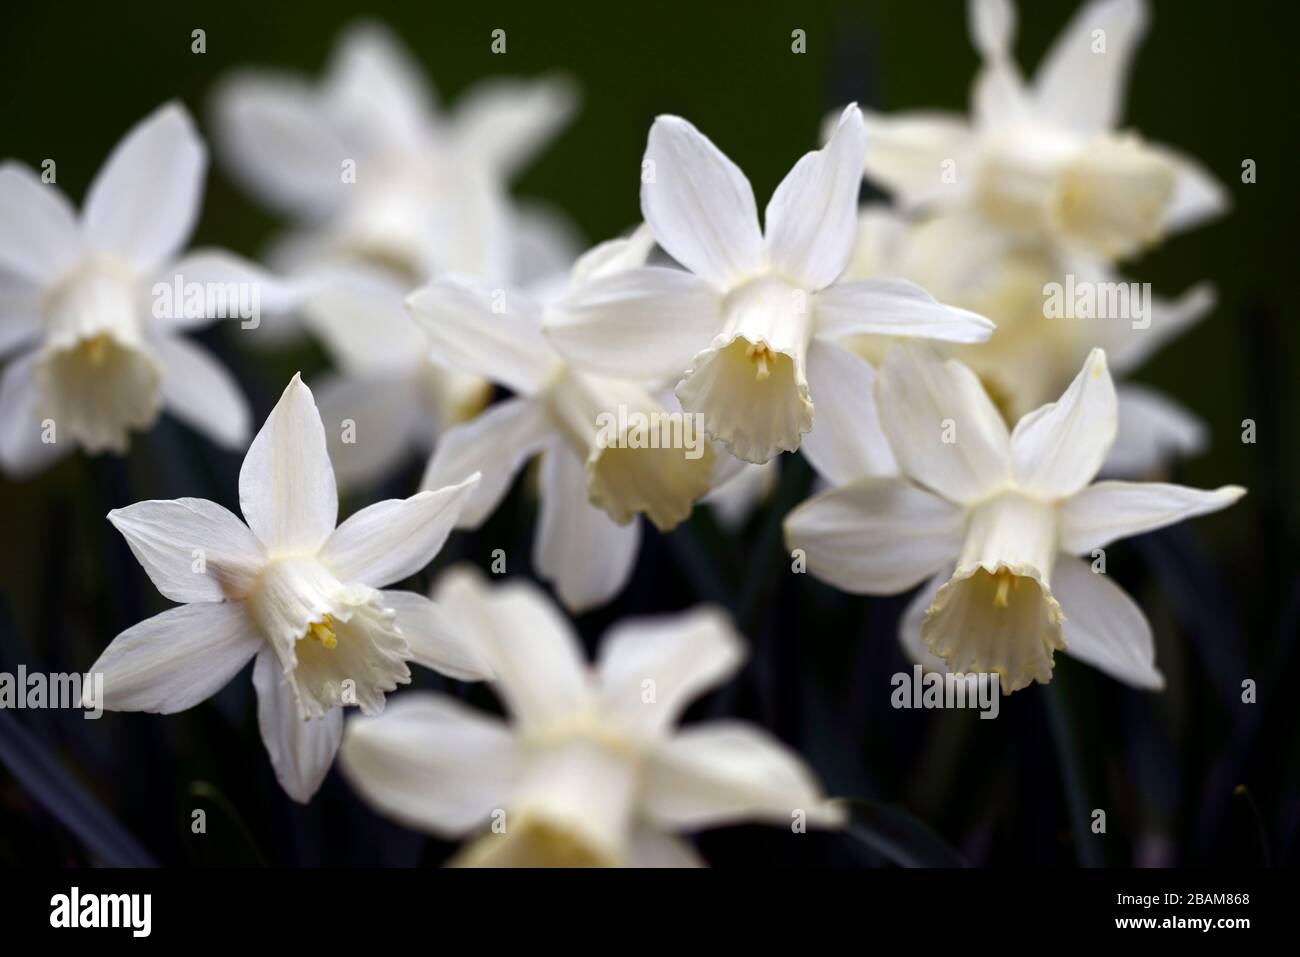 Narcisse Snow Baby,narcissi,daffodil,jonquilles,trompette crème blanche,trompettes,fleur de crème blanche,fleurs,floraison,miniature,petite,courte,RM Floral Banque D'Images